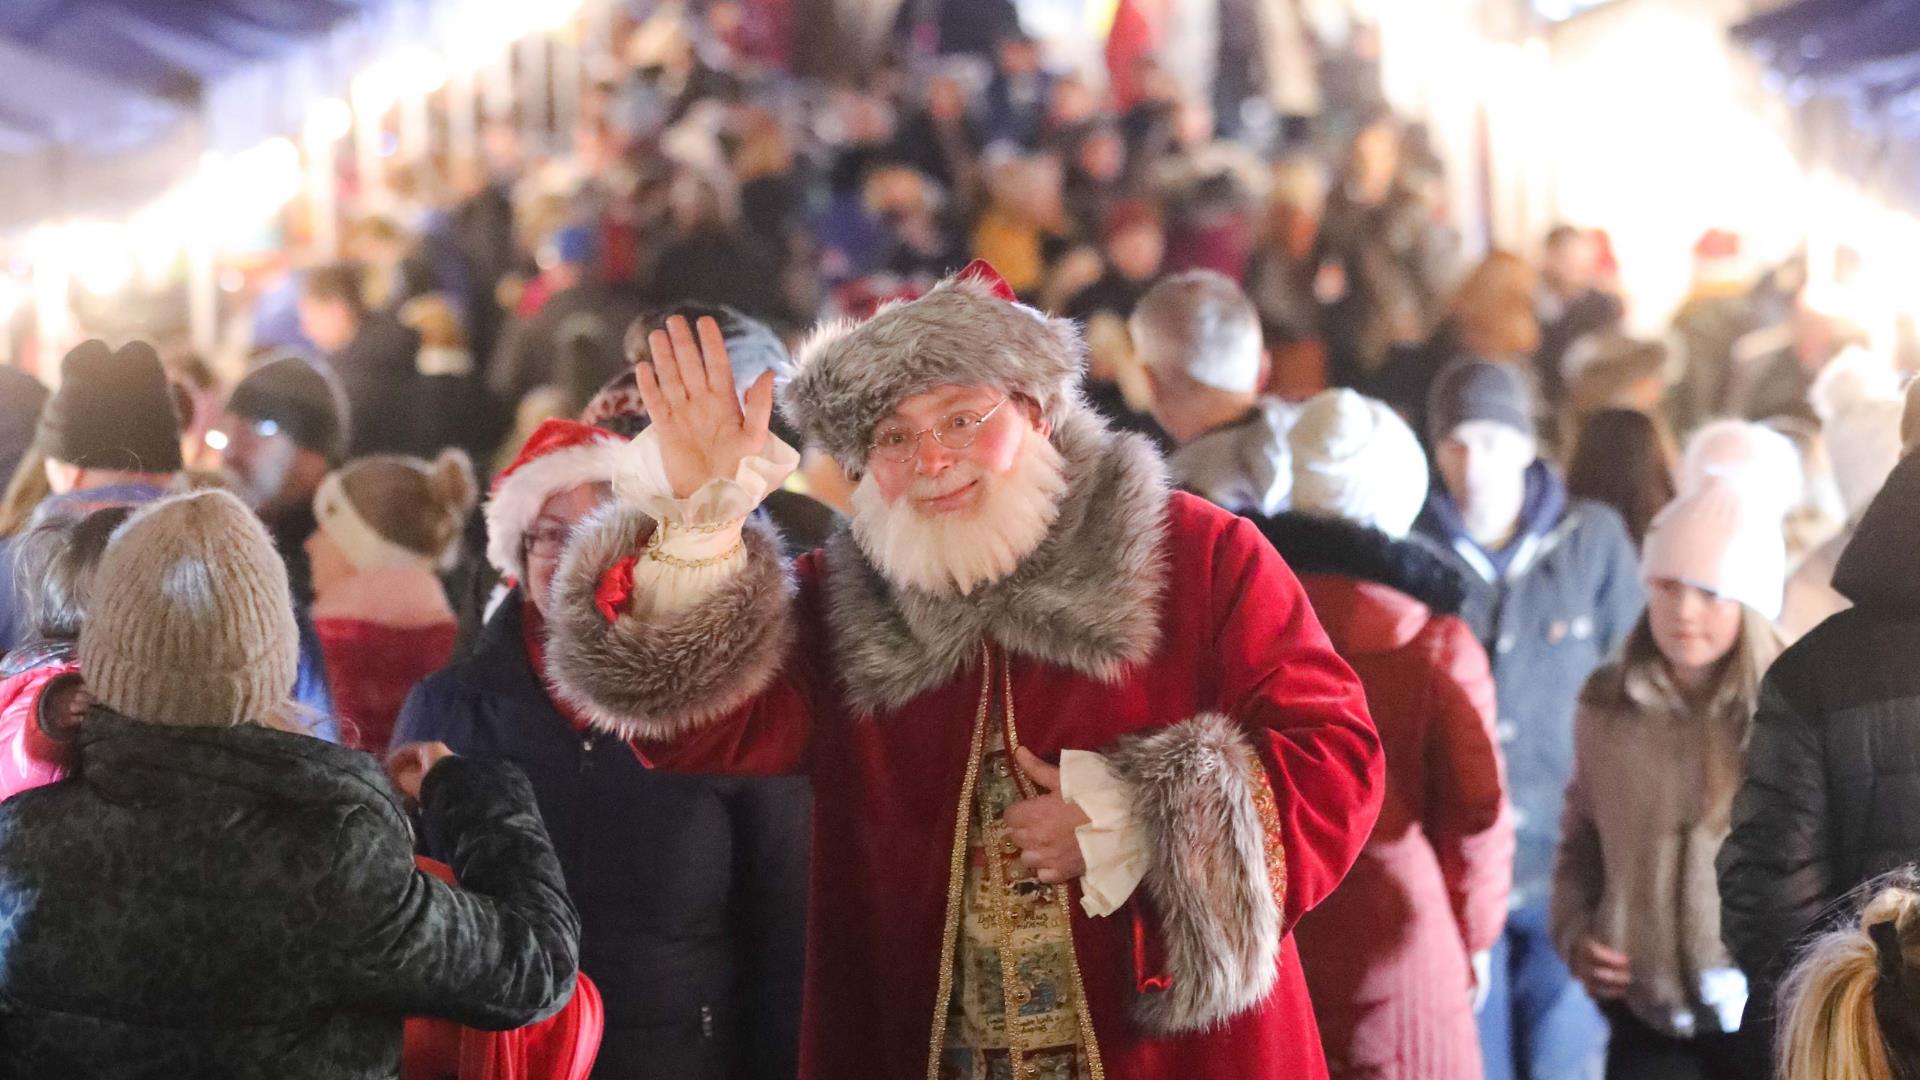 Santa waving at camera with crowd behind him